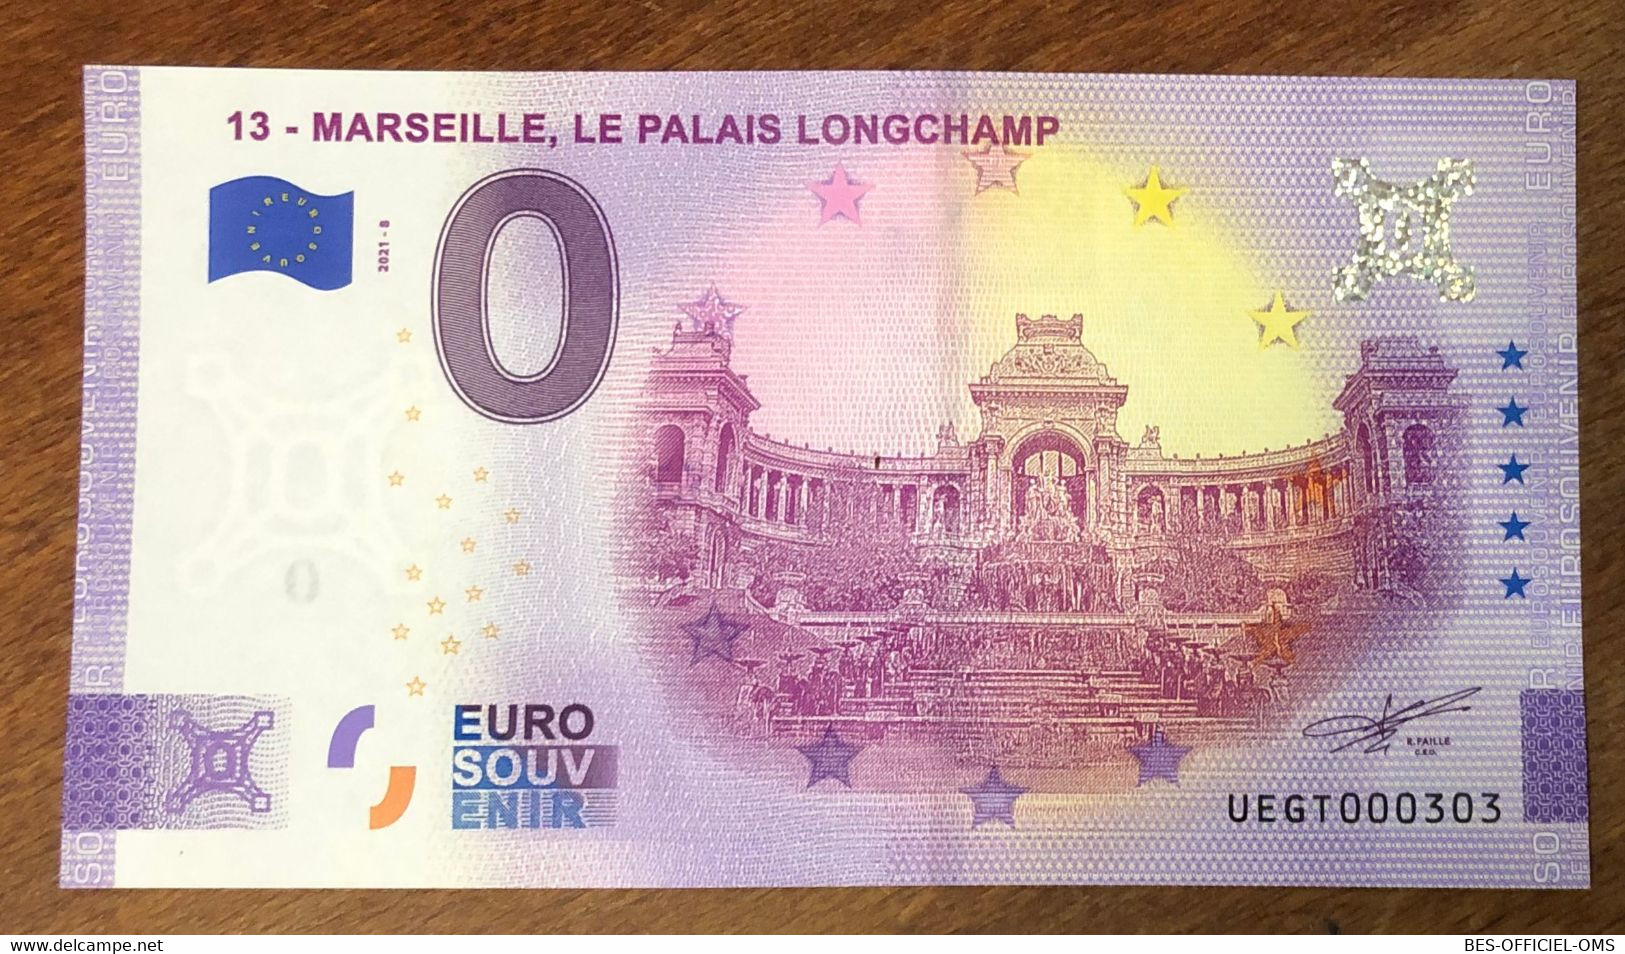 2021 BILLET 0 EURO SOUVENIR DPT 13 MARSEILLE LE PALAIS LONGCHAMP PAPER MONEY 0 EURO SCHEIN BANKNOTE - Private Proofs / Unofficial